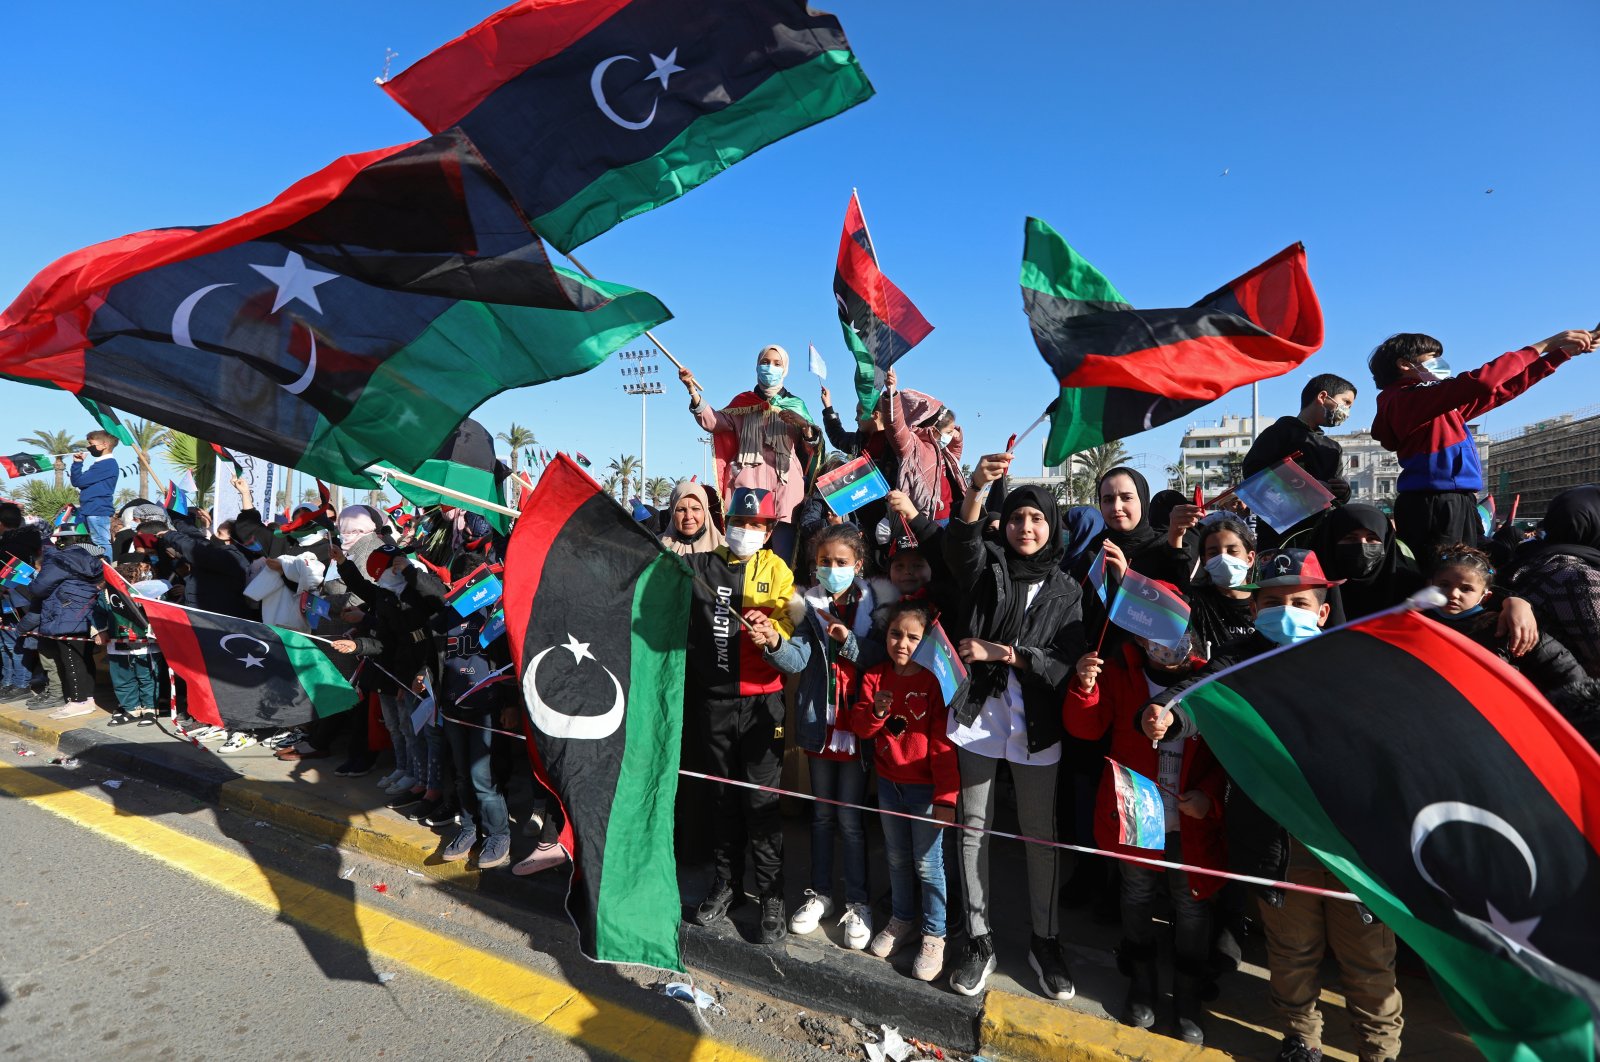 Pejabat Turki membahas perkembangan di Libya dengan UNSMIL